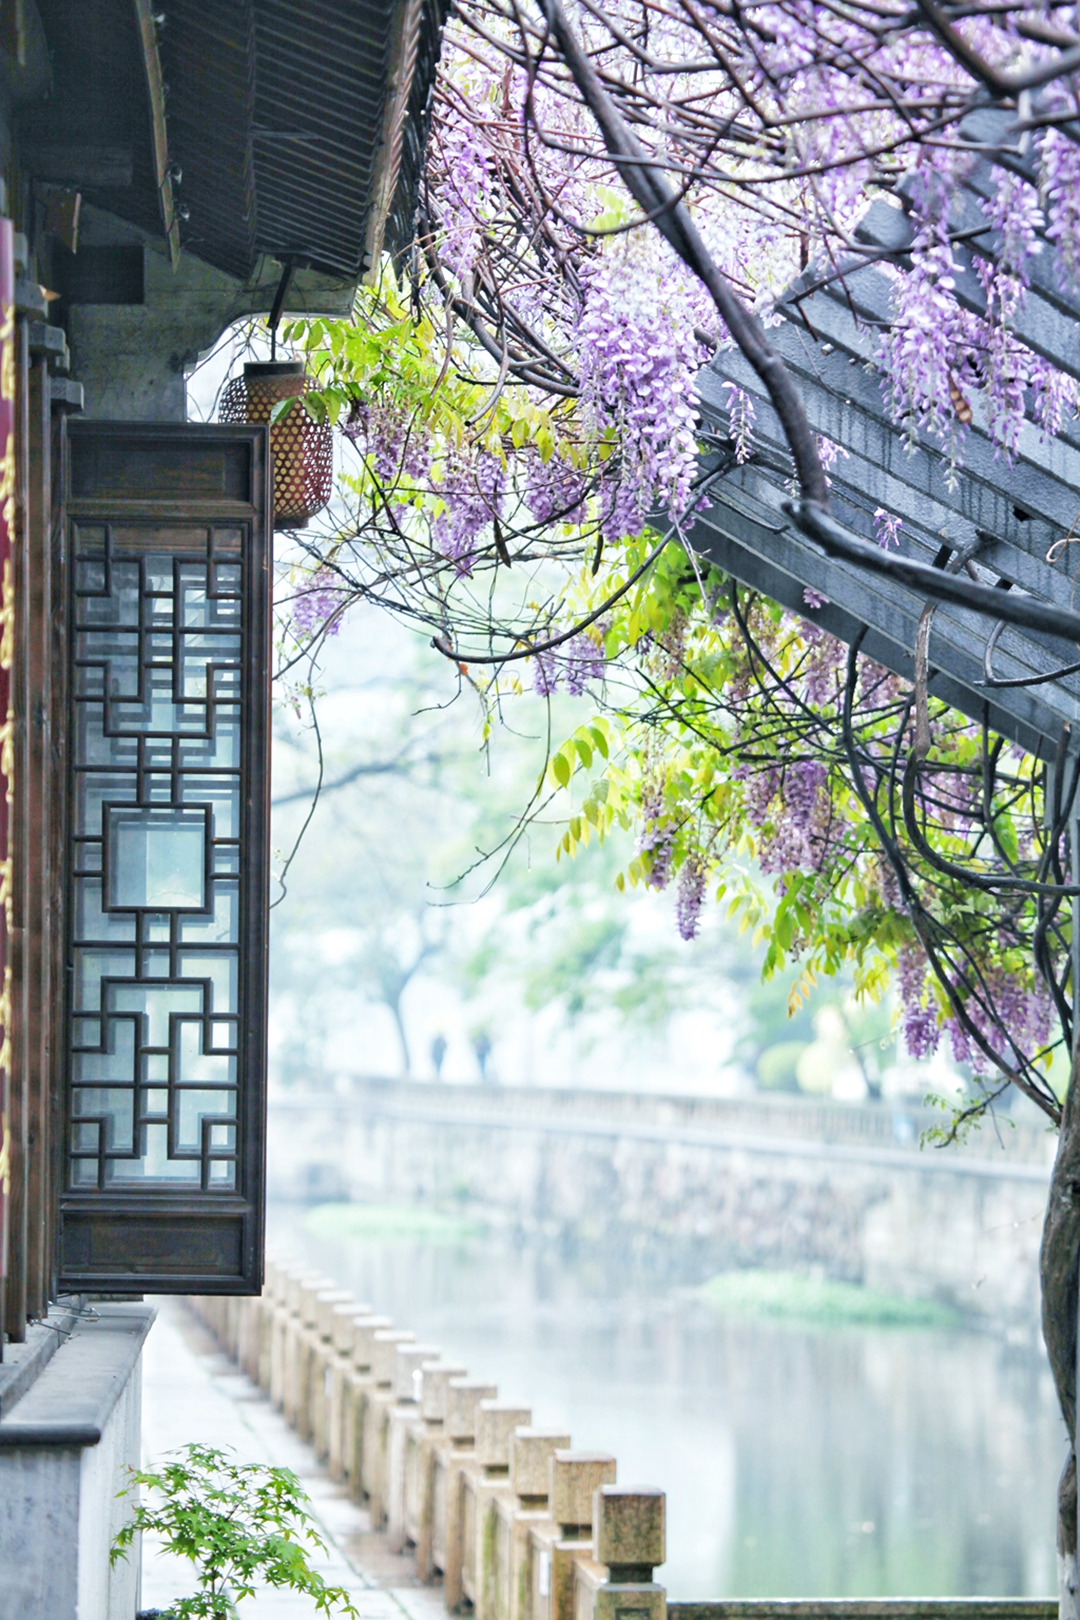 hk_c_常州歷史名巷青果巷拍攝的一個場景。煙雨朦朧，紫藤花開。 陳書新.jpg